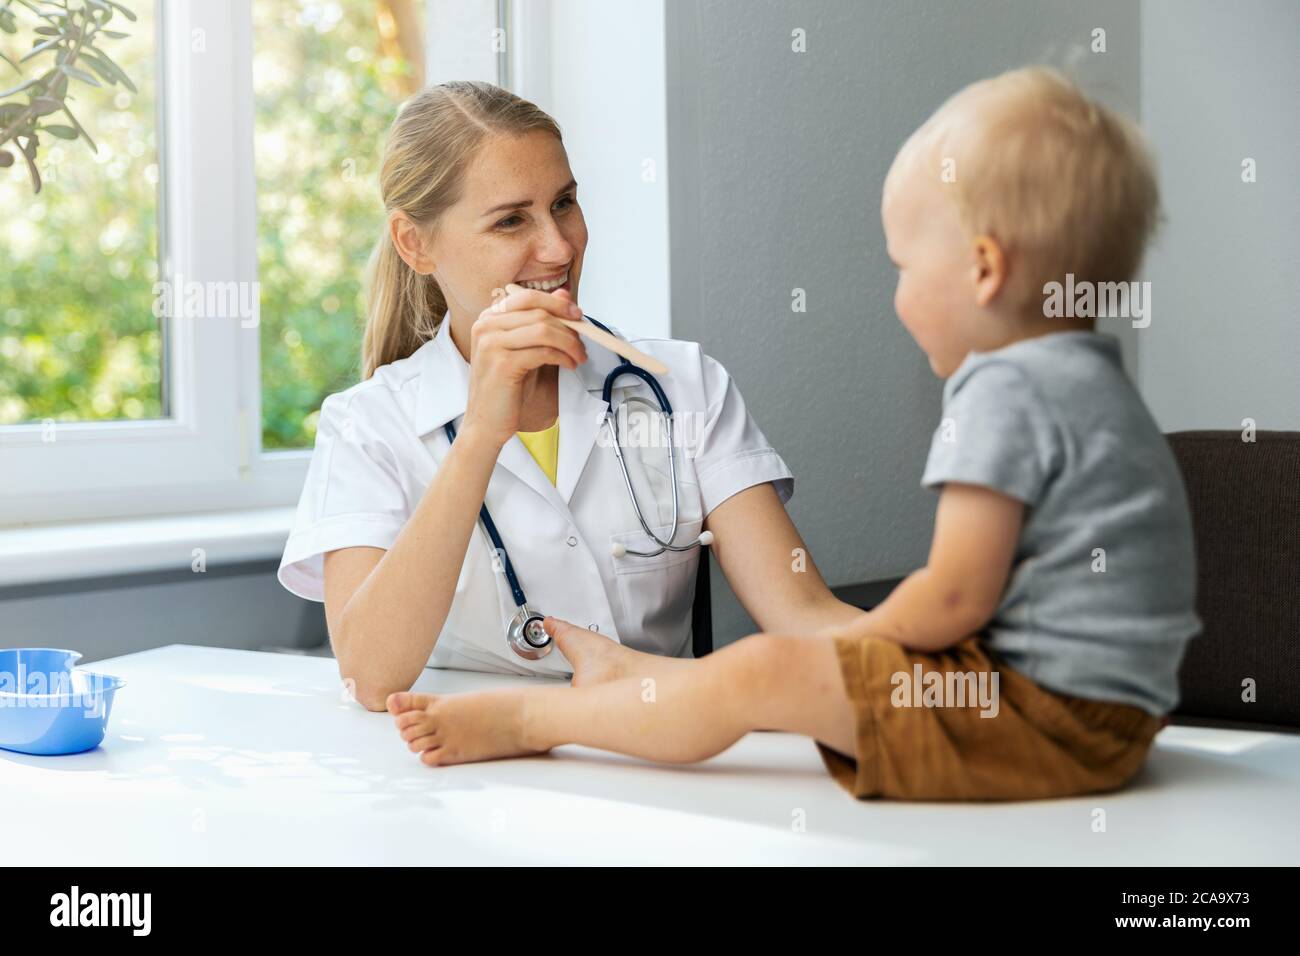 pediatra in ufficio che controlla la gola del bambino con bastone di legno Foto Stock